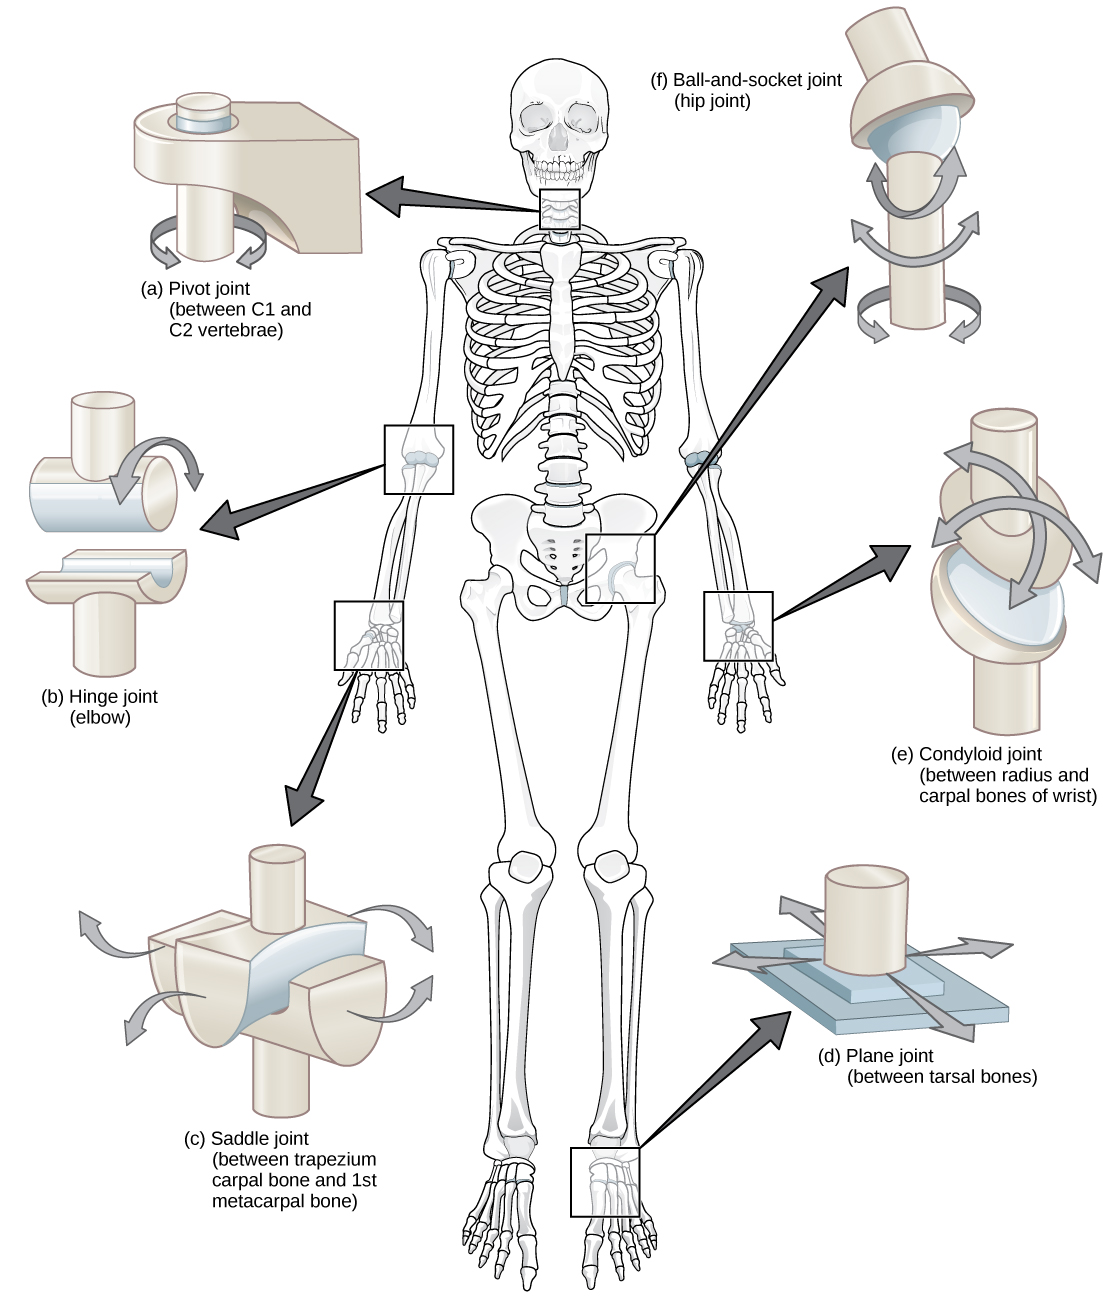 插图显示了身体的关节。 颈部是一个允许旋转的枢轴关节。 臀部是一个球窝关节，允许旋转运动。 肘部是一个铰链接头，允许沿一个方向移动。 手腕有一个鞍形关节，允许来回移动，还有一个允许上下运动的疣状关节。 脚的睑板有一个平面接头，可以来回移动。